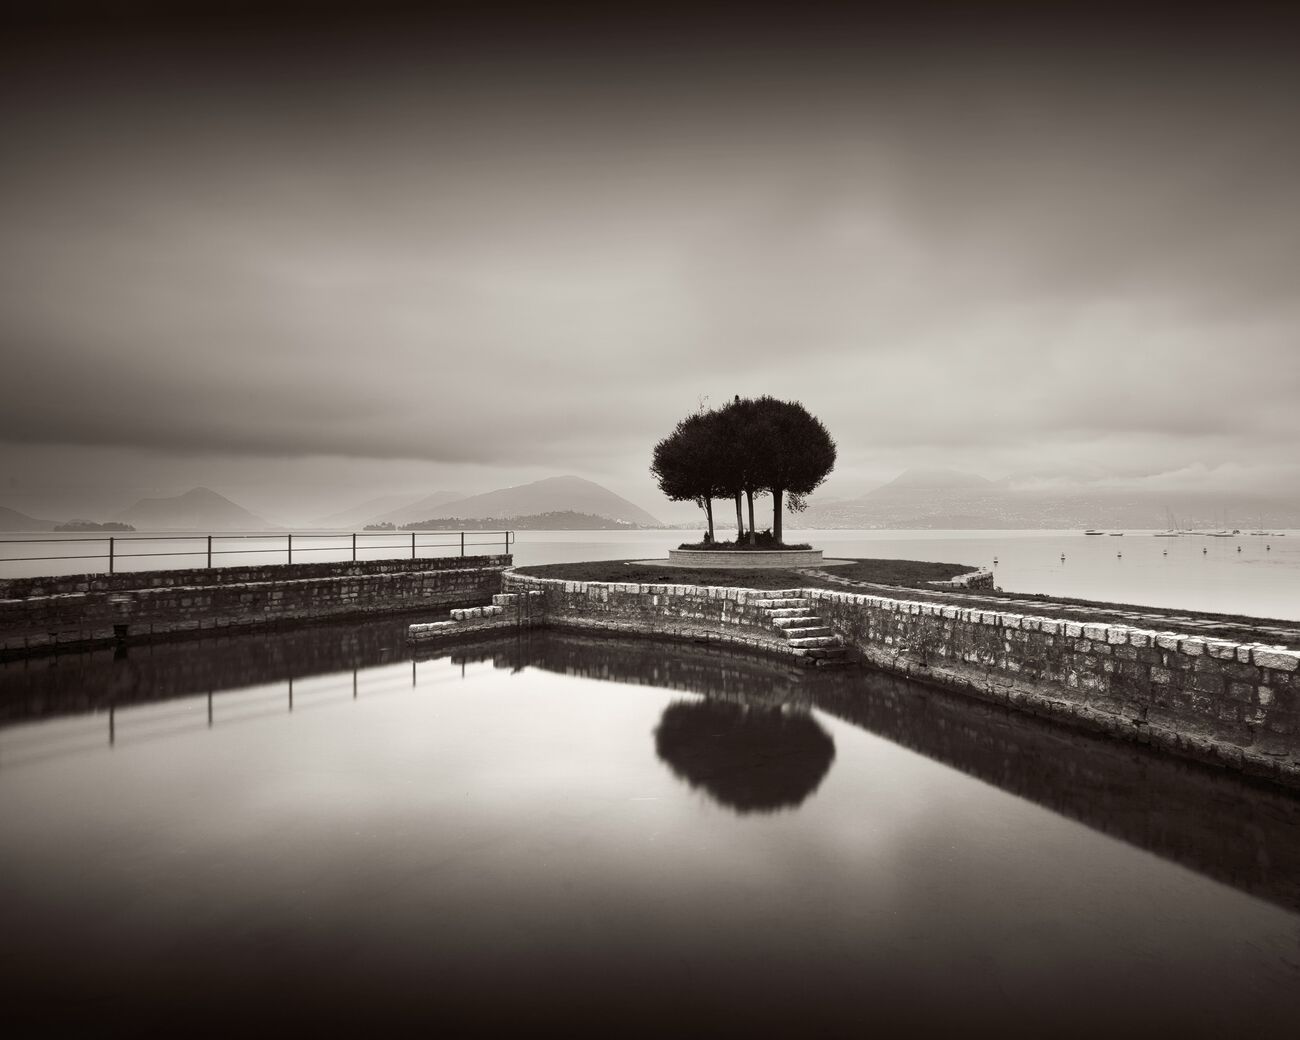 Achat d'une photographie 23 x 18.4 cm, Trees on pier, etude 2. Ref-11608-3 - Denis Olivier Photographie